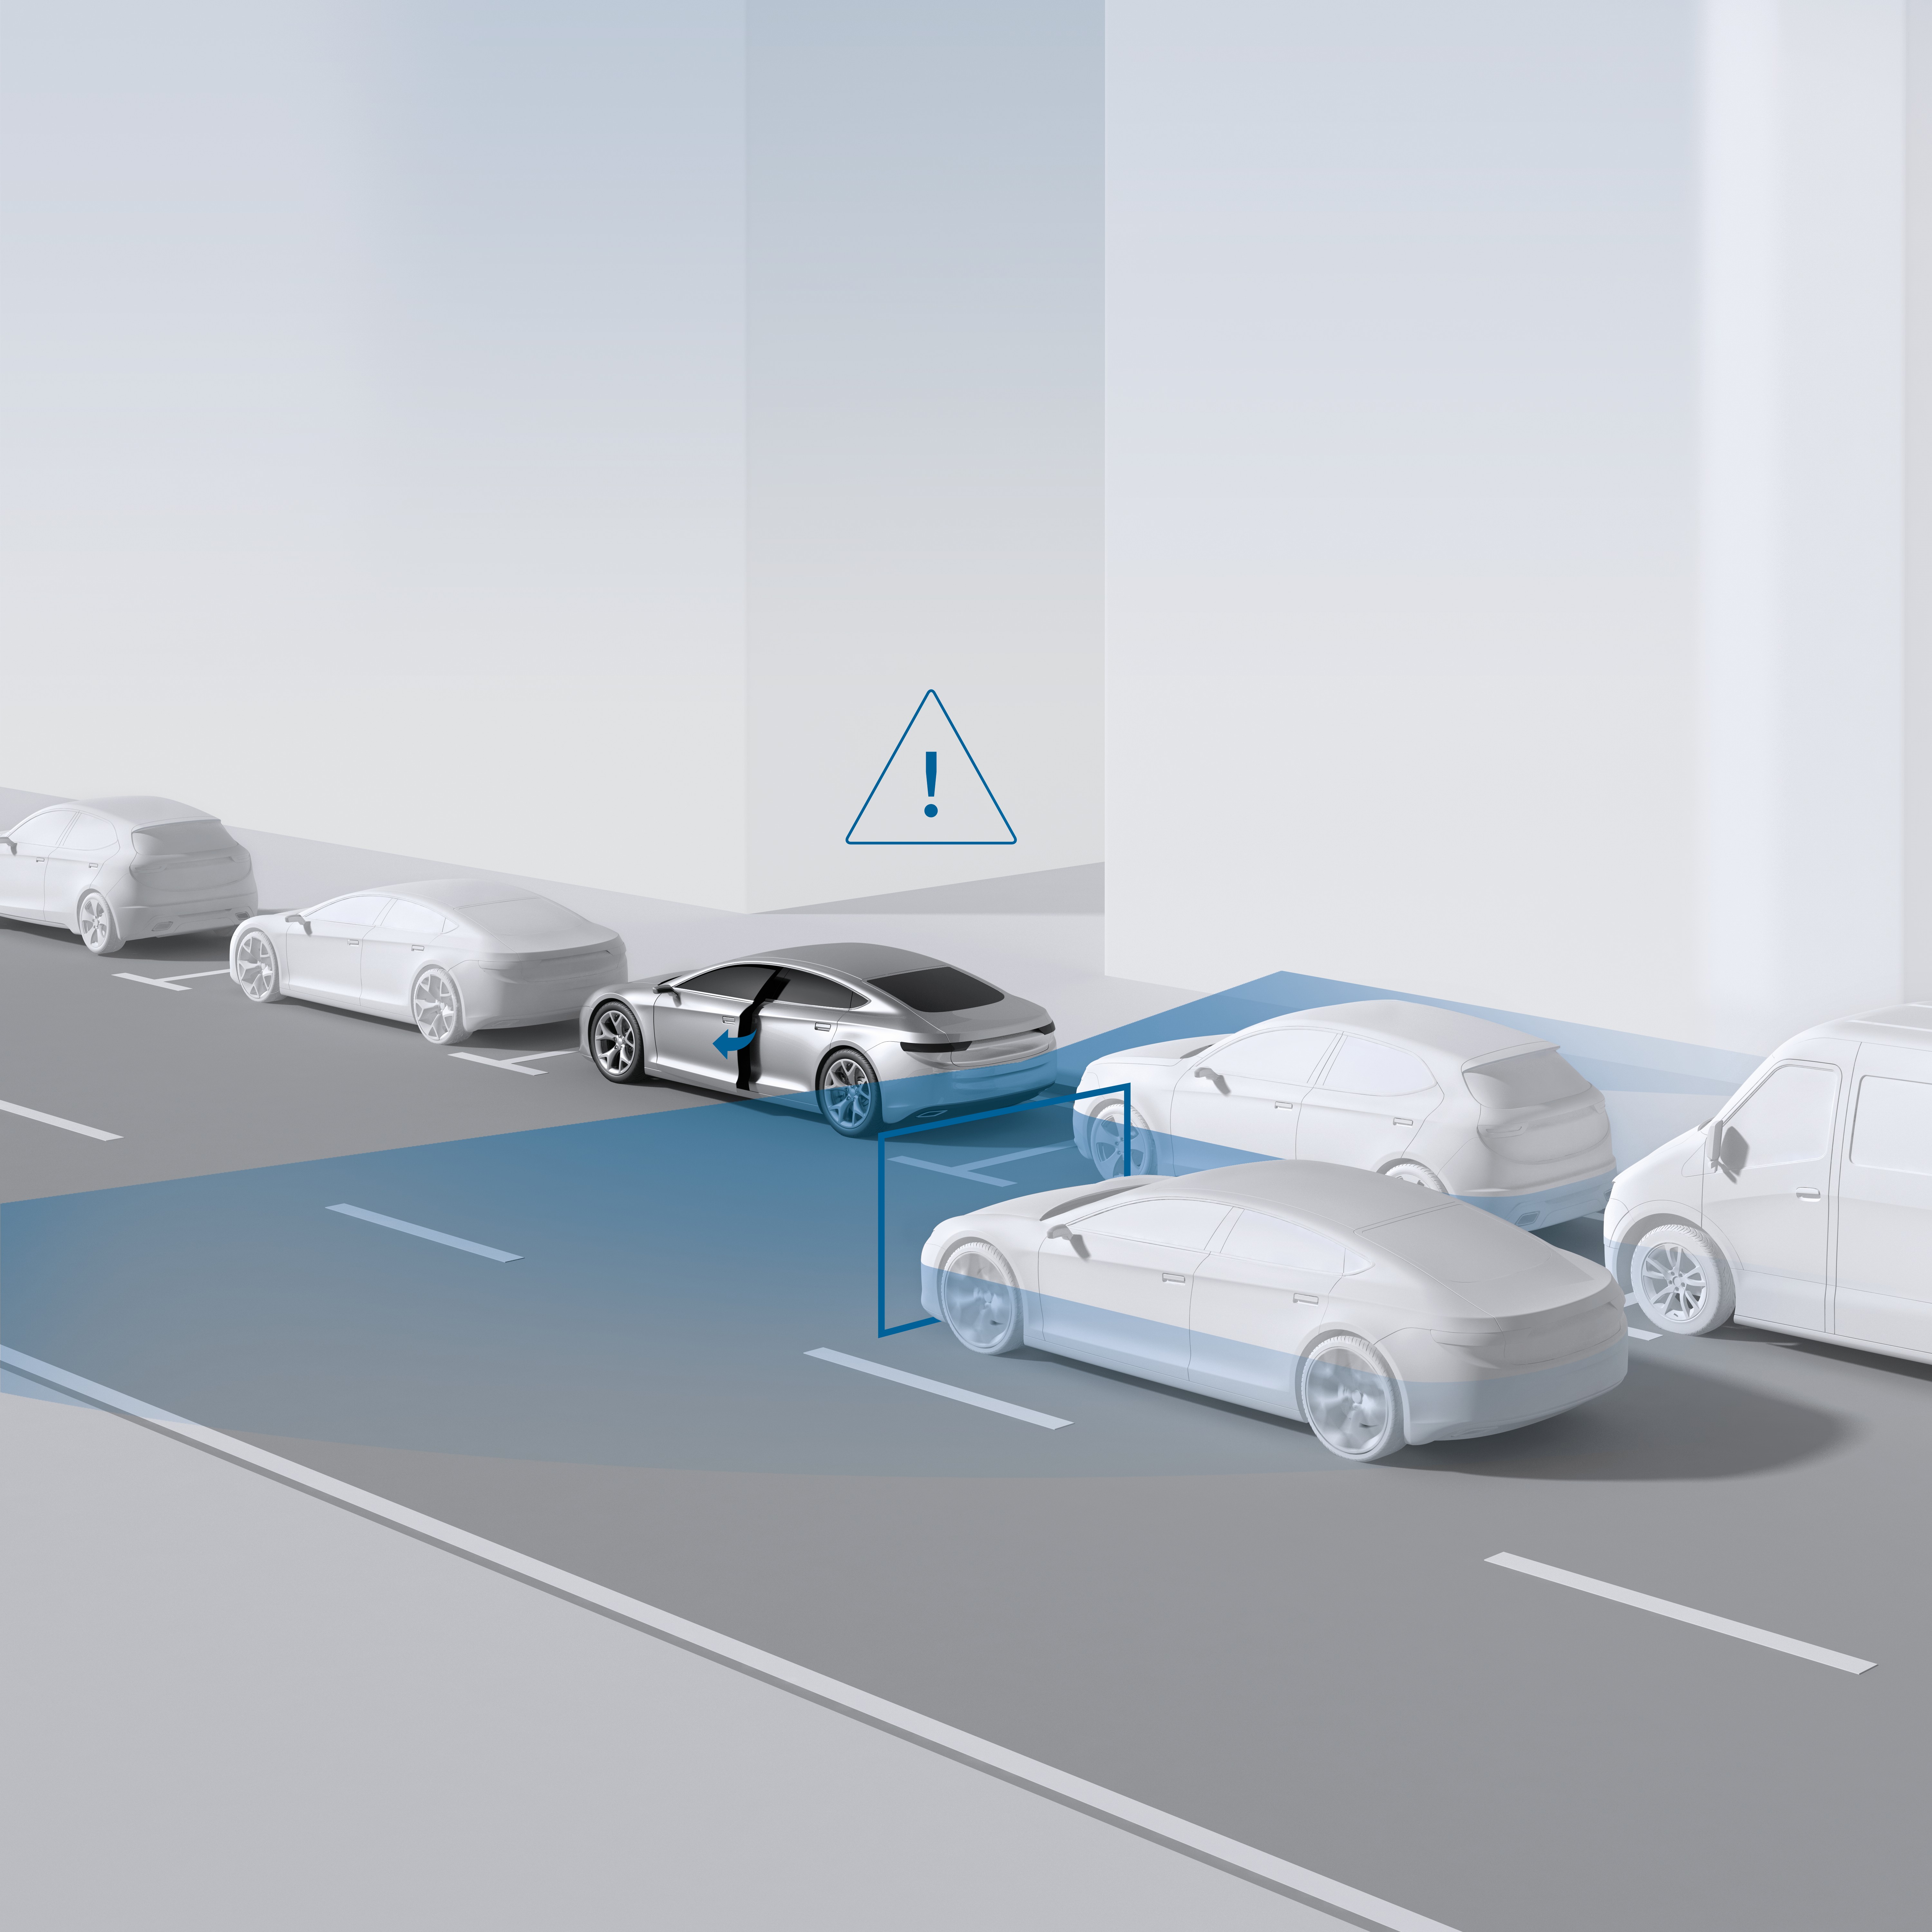 Bosch apresenta novo sistema de assistência ao condutor.